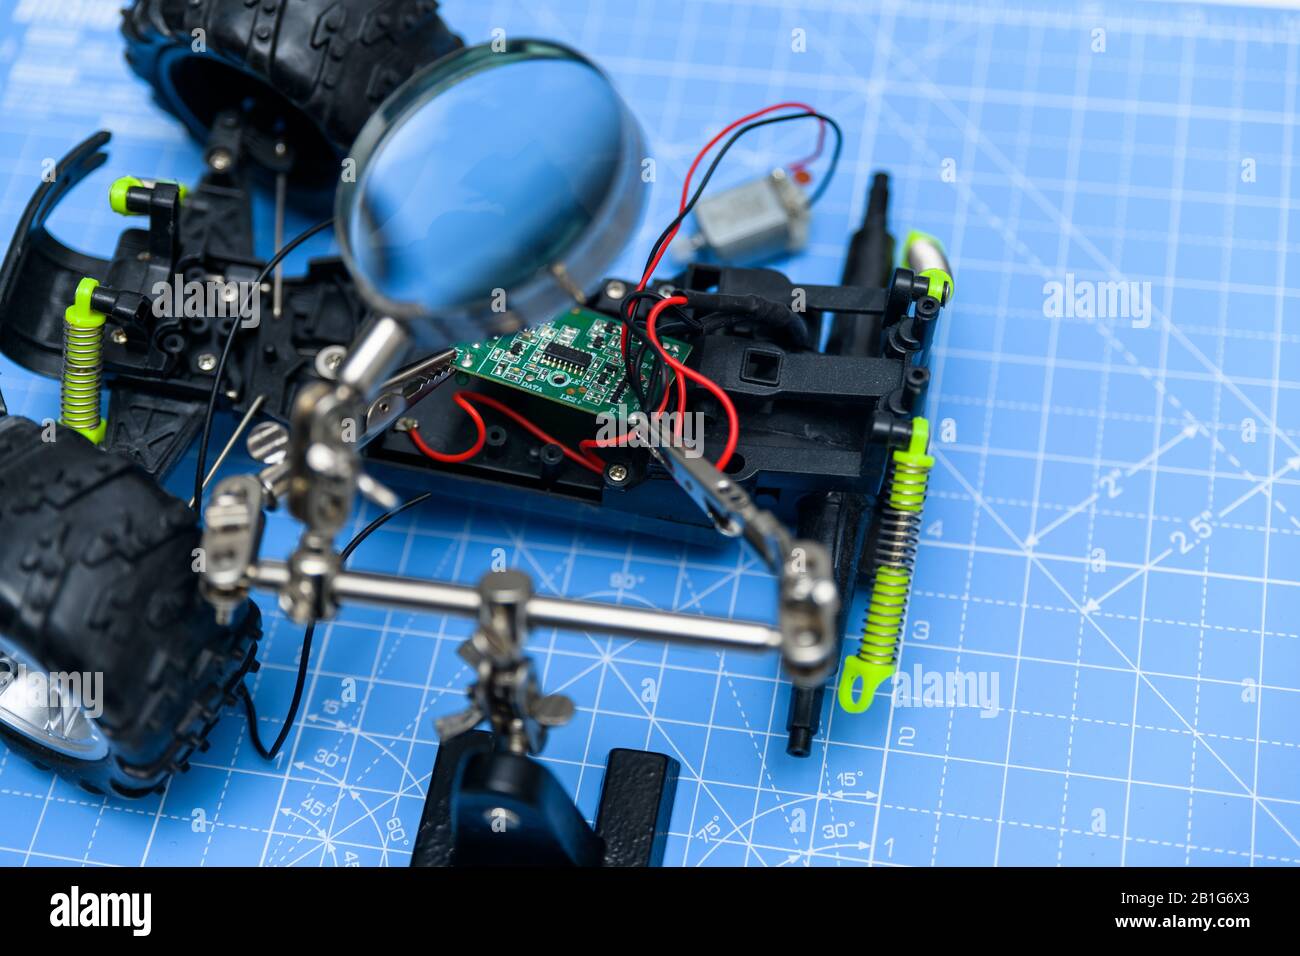 Vettura giocattolo Assenling con circuito stampato. Concetto di elettronica per giocattoli da assemblare, riparare, riciclare o utilizzare per l'istruzione. Foto Stock